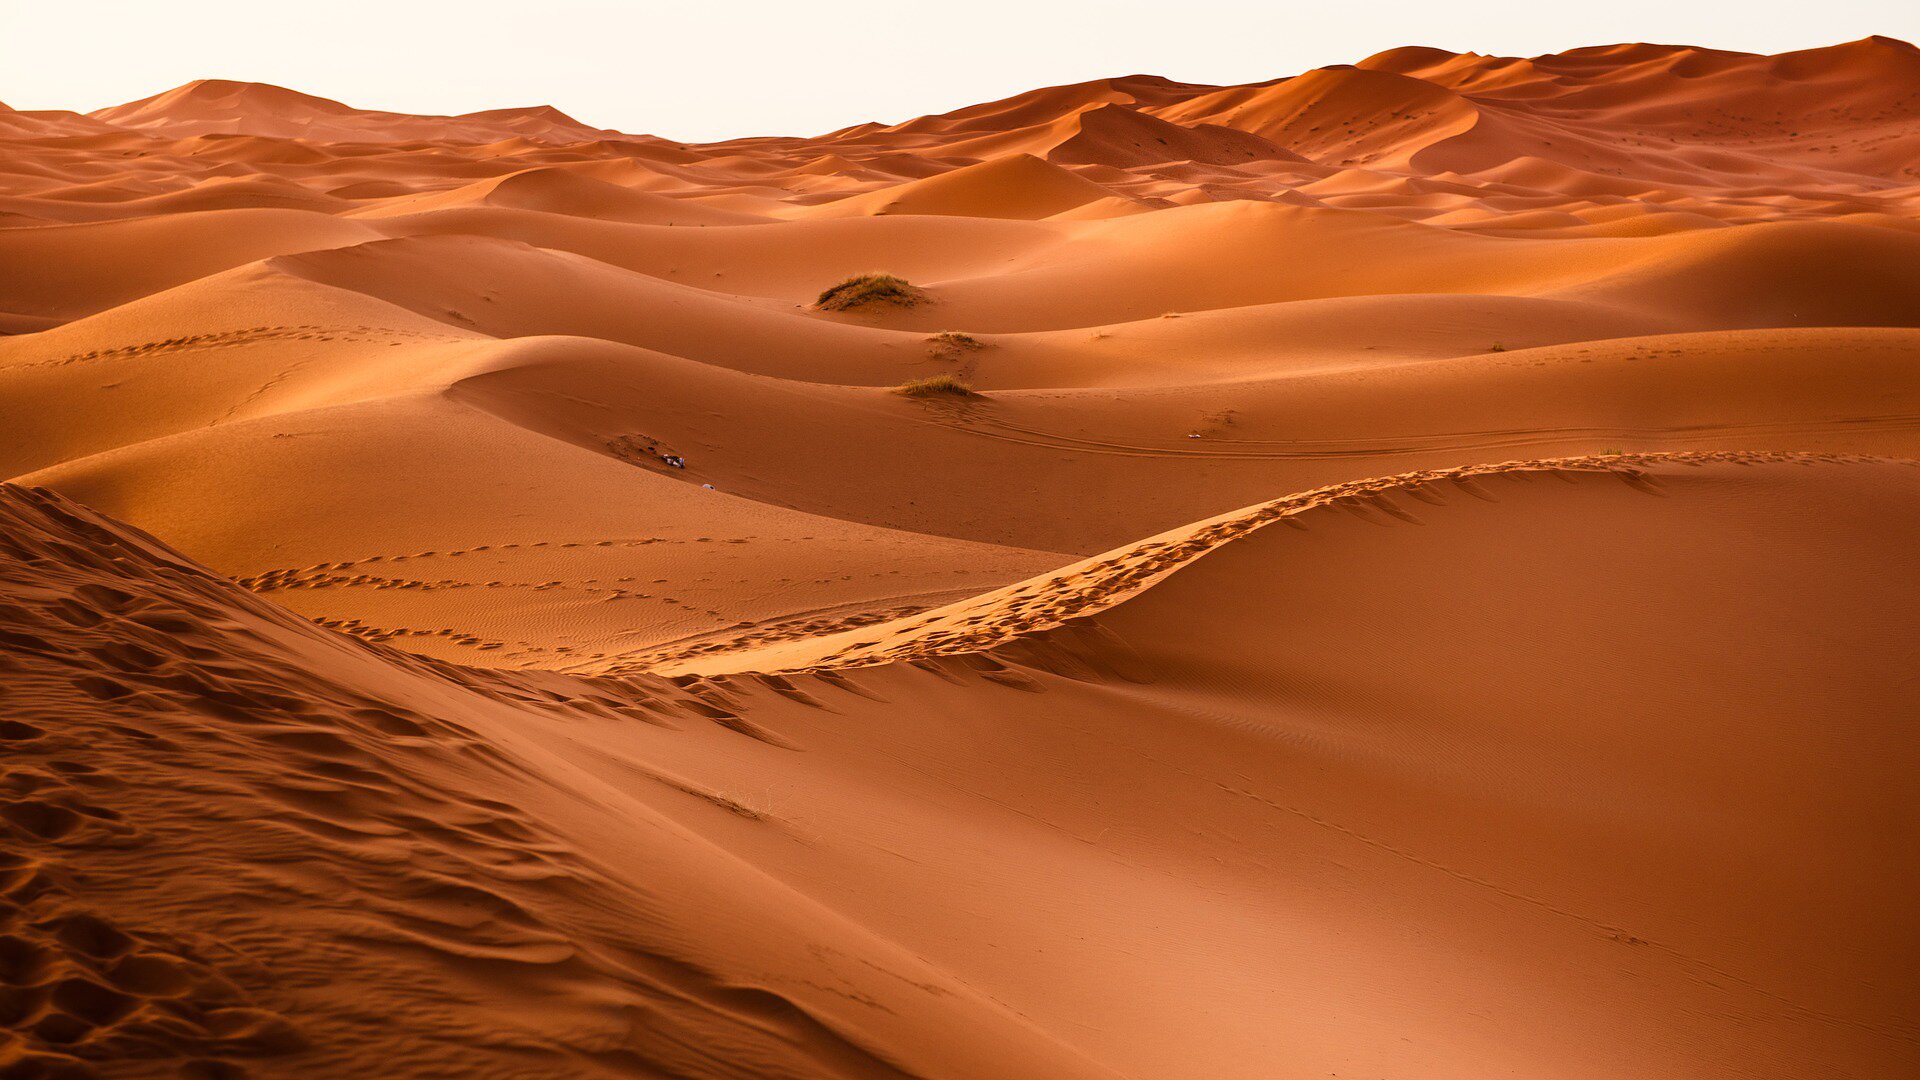 Zdjęcie przedstawia fragment pustyni piaszczystej. Po horyzont ciągną się duże piaszczyste wydmy.